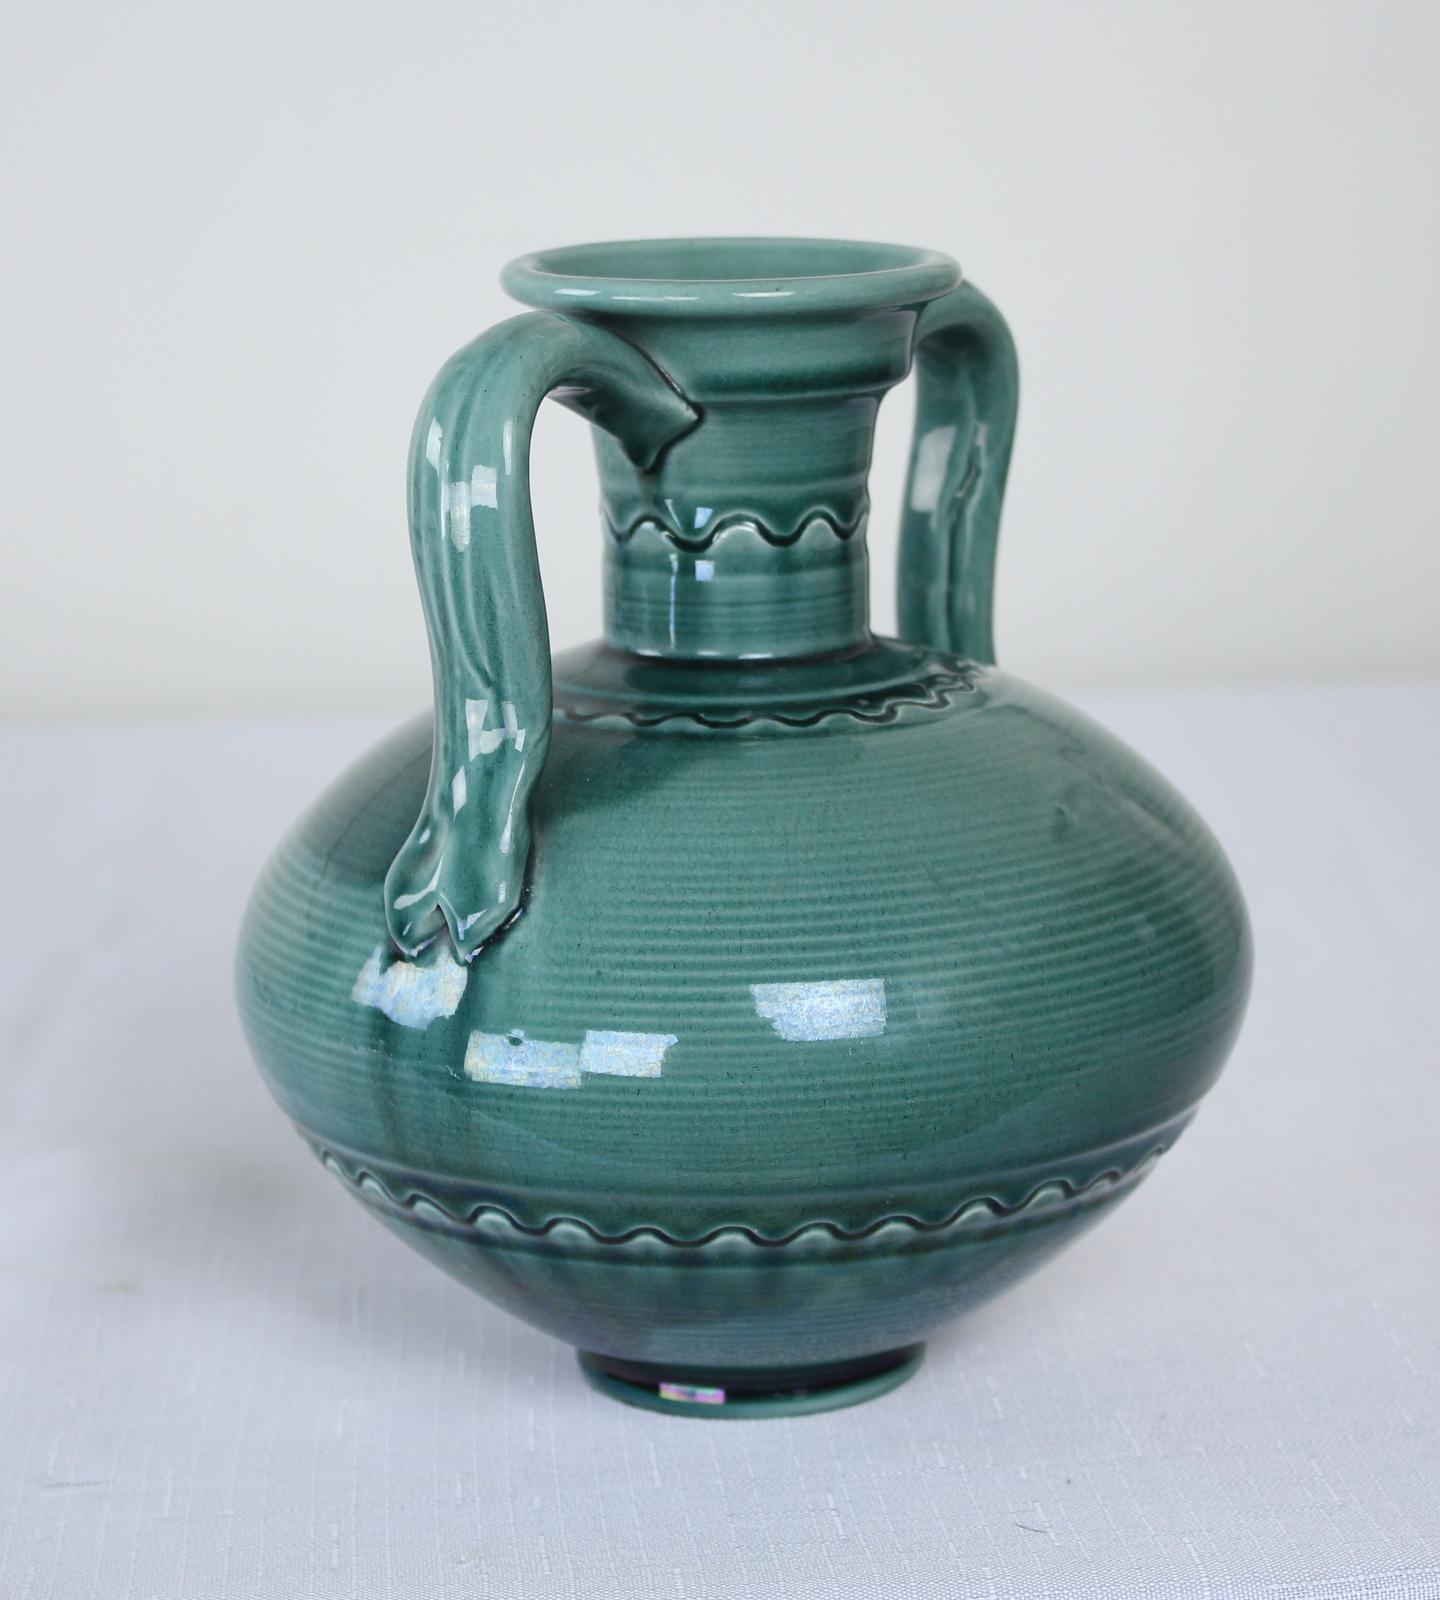 Vase en poterie d'art par Burmantofts à la manière de Christopher Dresser. Modèle anglo-persan, très populaire à l'époque, avec un corps bulbeux et un col cylindrique fin, avec une poignée profilée de chaque côté. Dans une nuance de vert